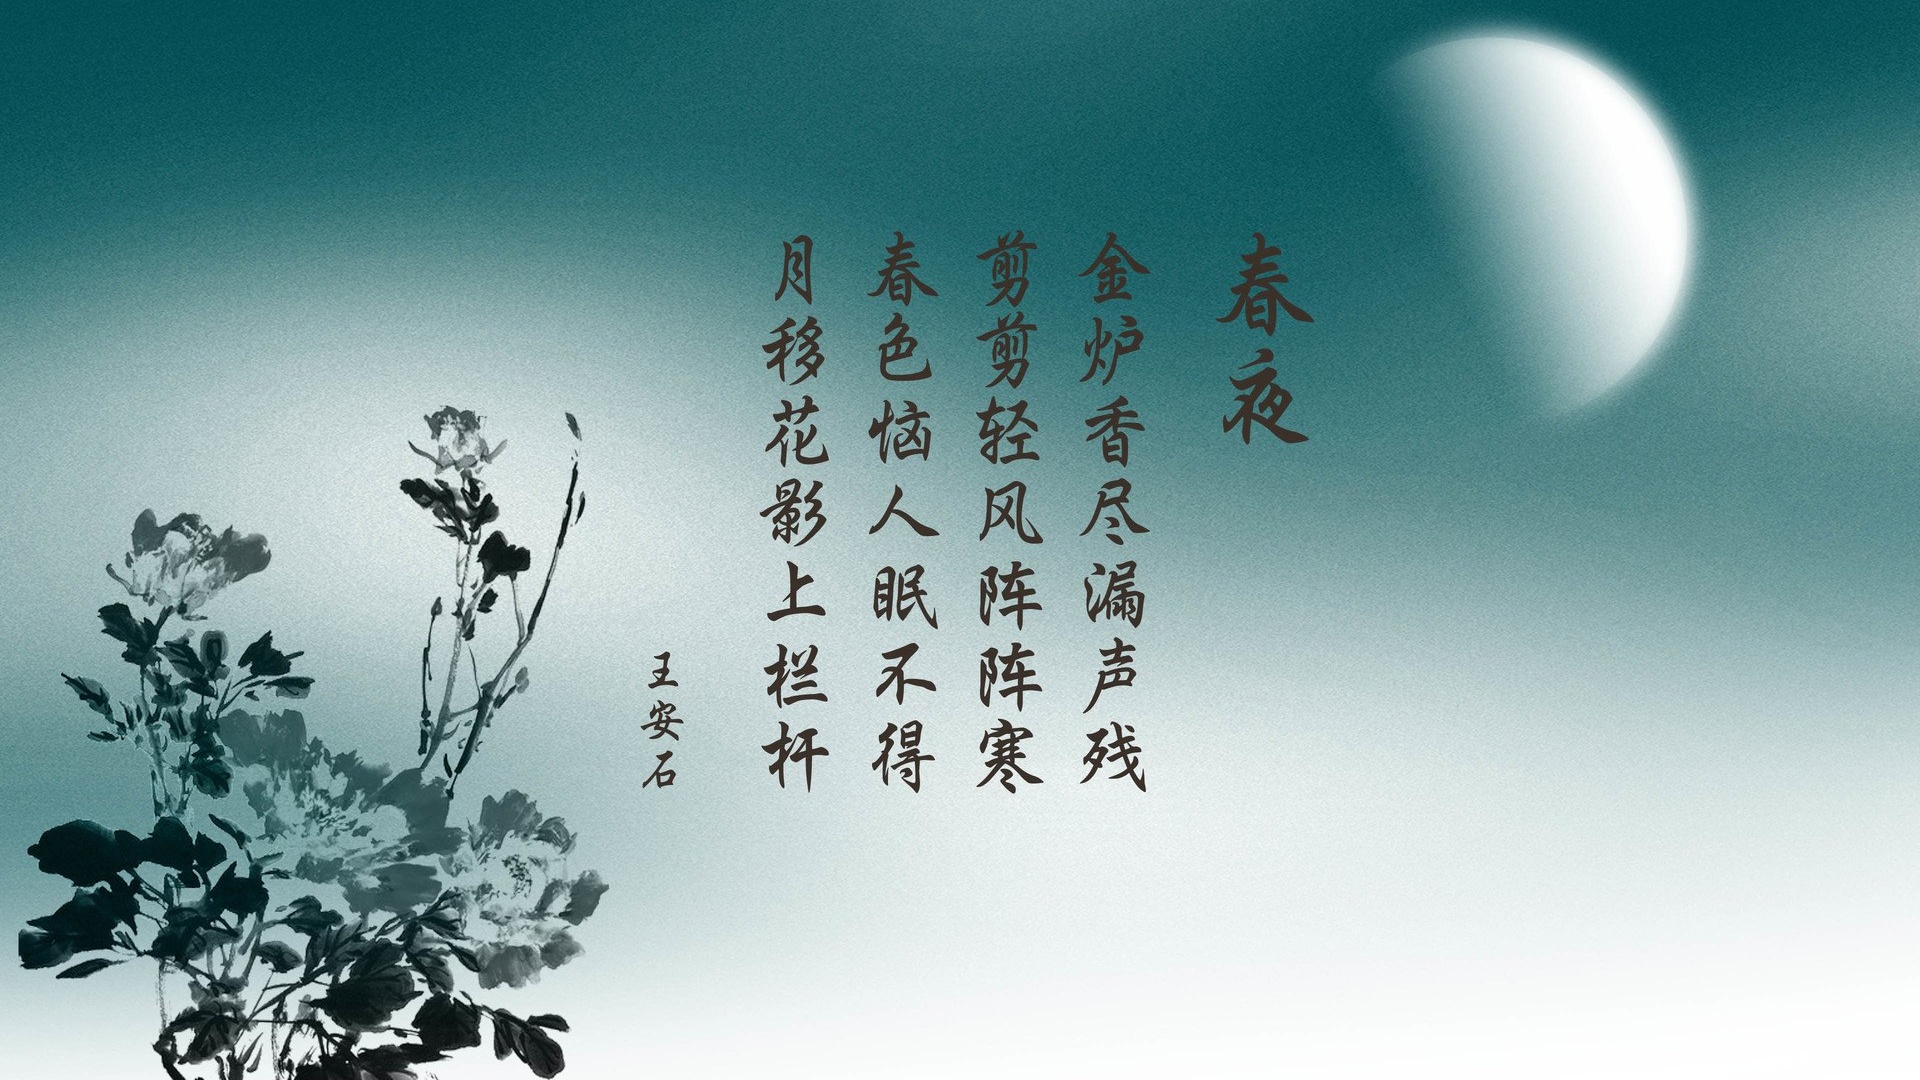 文字 诗词 中国风 春夜 王安石 文字控壁纸